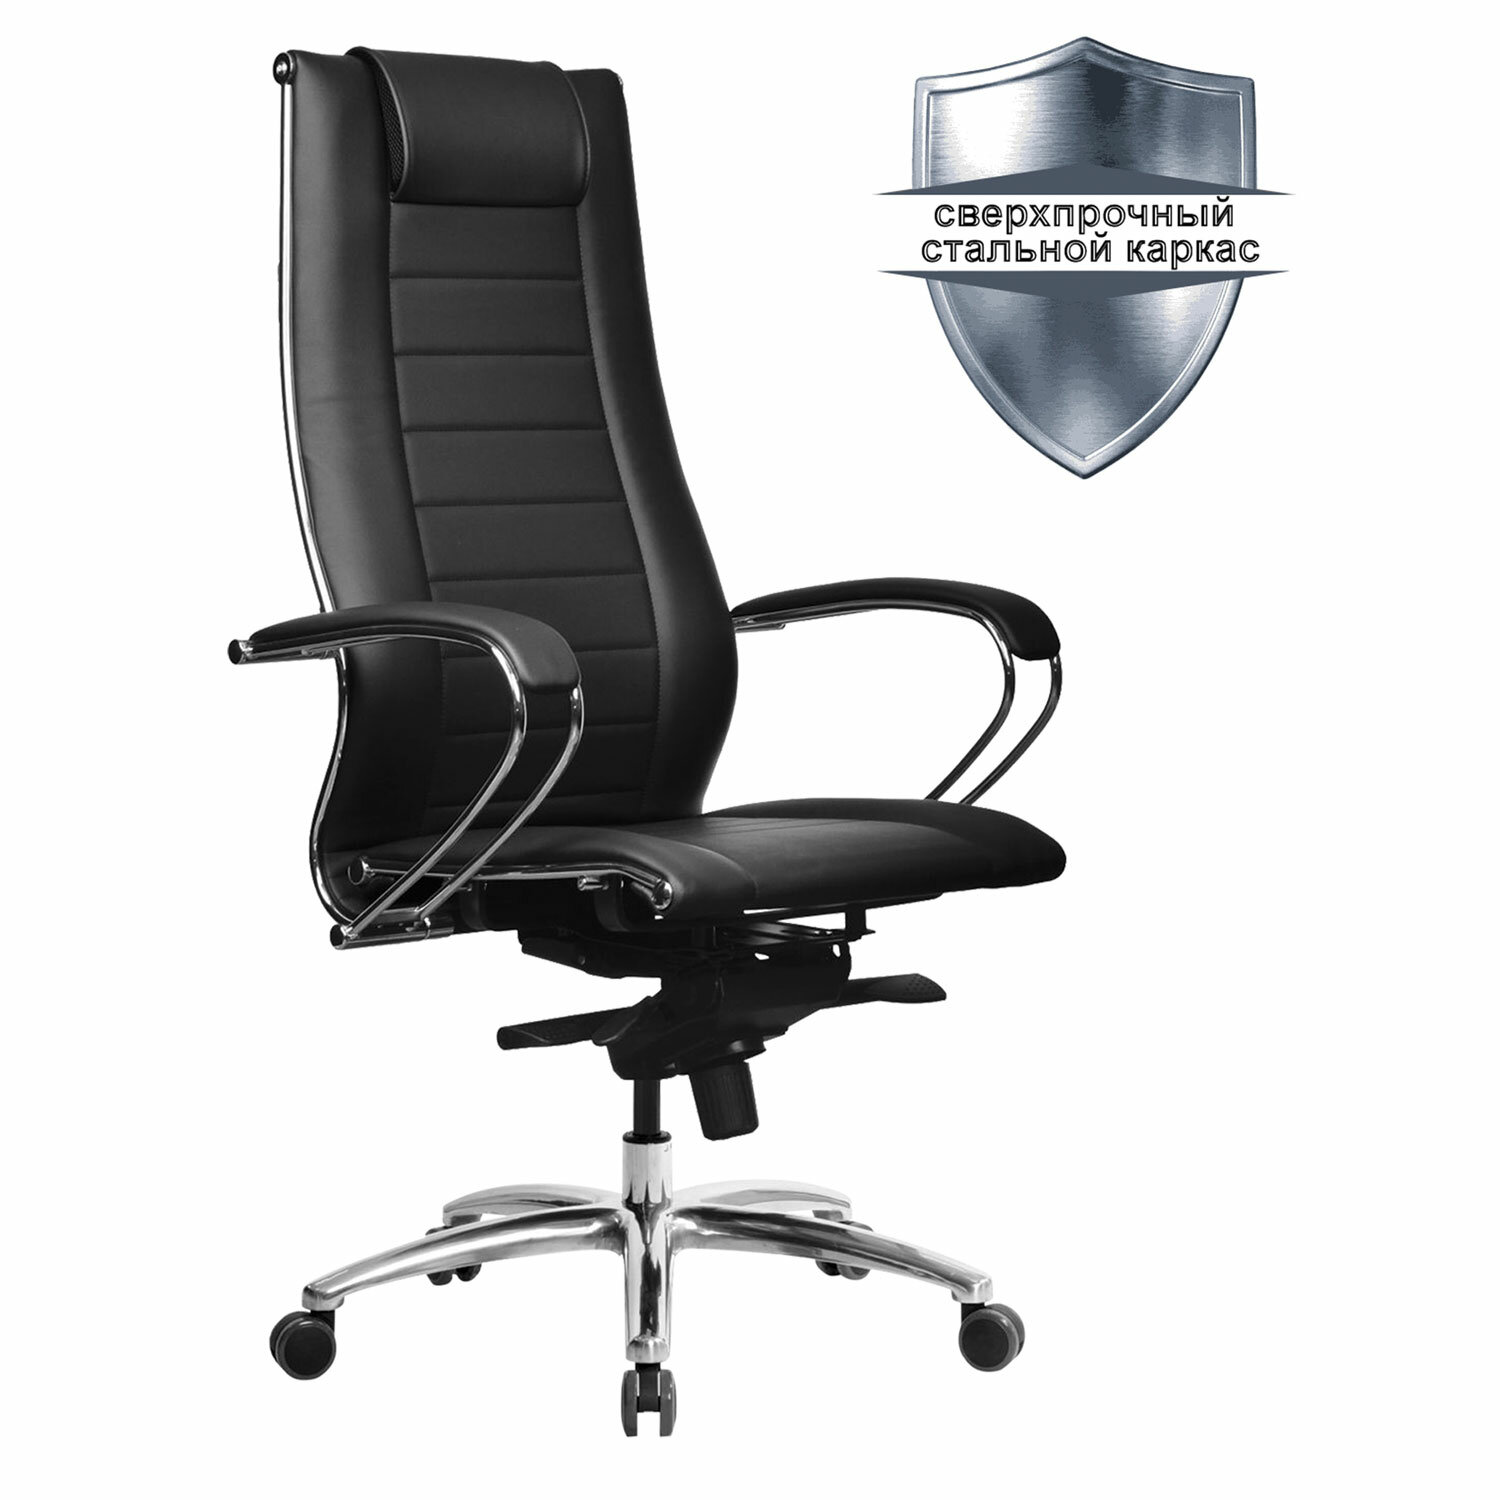 Кресло офисное МЕТТА SAMURAI Lux 2, рецик. кожа, регулируемое сиденье, черное